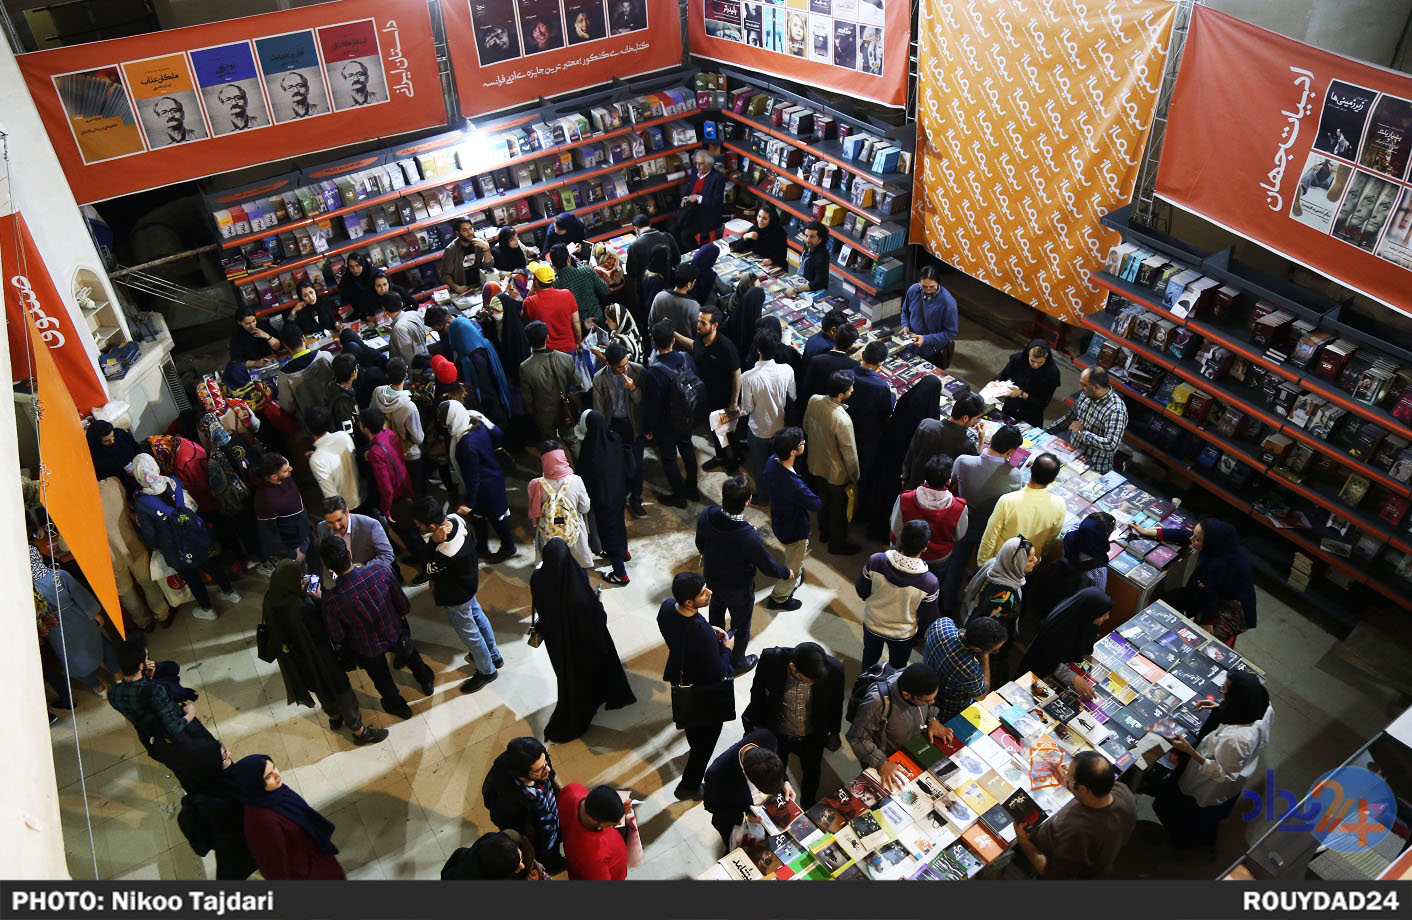 افزایش ۱۰درصدی فروش کتاب در نمایشگاه، نسبت به پارسال